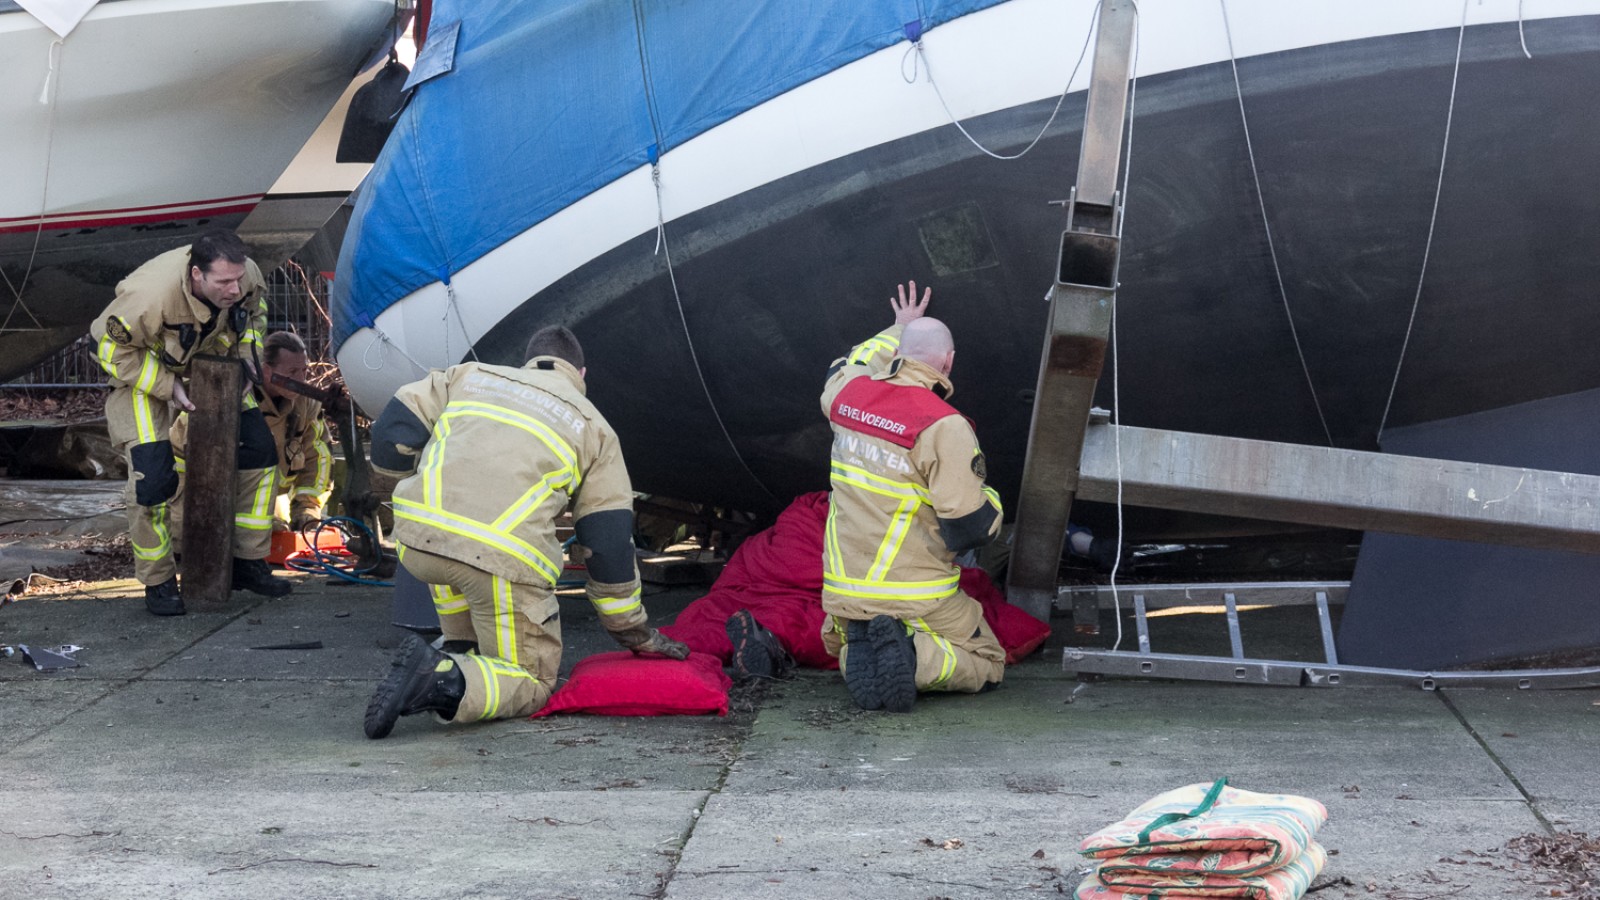 Aan de Scheepmakerskade in Amsterdam-Noord is rond 11:00 uur een man bekneld geraakt tijdens werkzaamheden aan een boot. 
De toedracht is nog onbekend. De traumahelicopter verleent hulp.